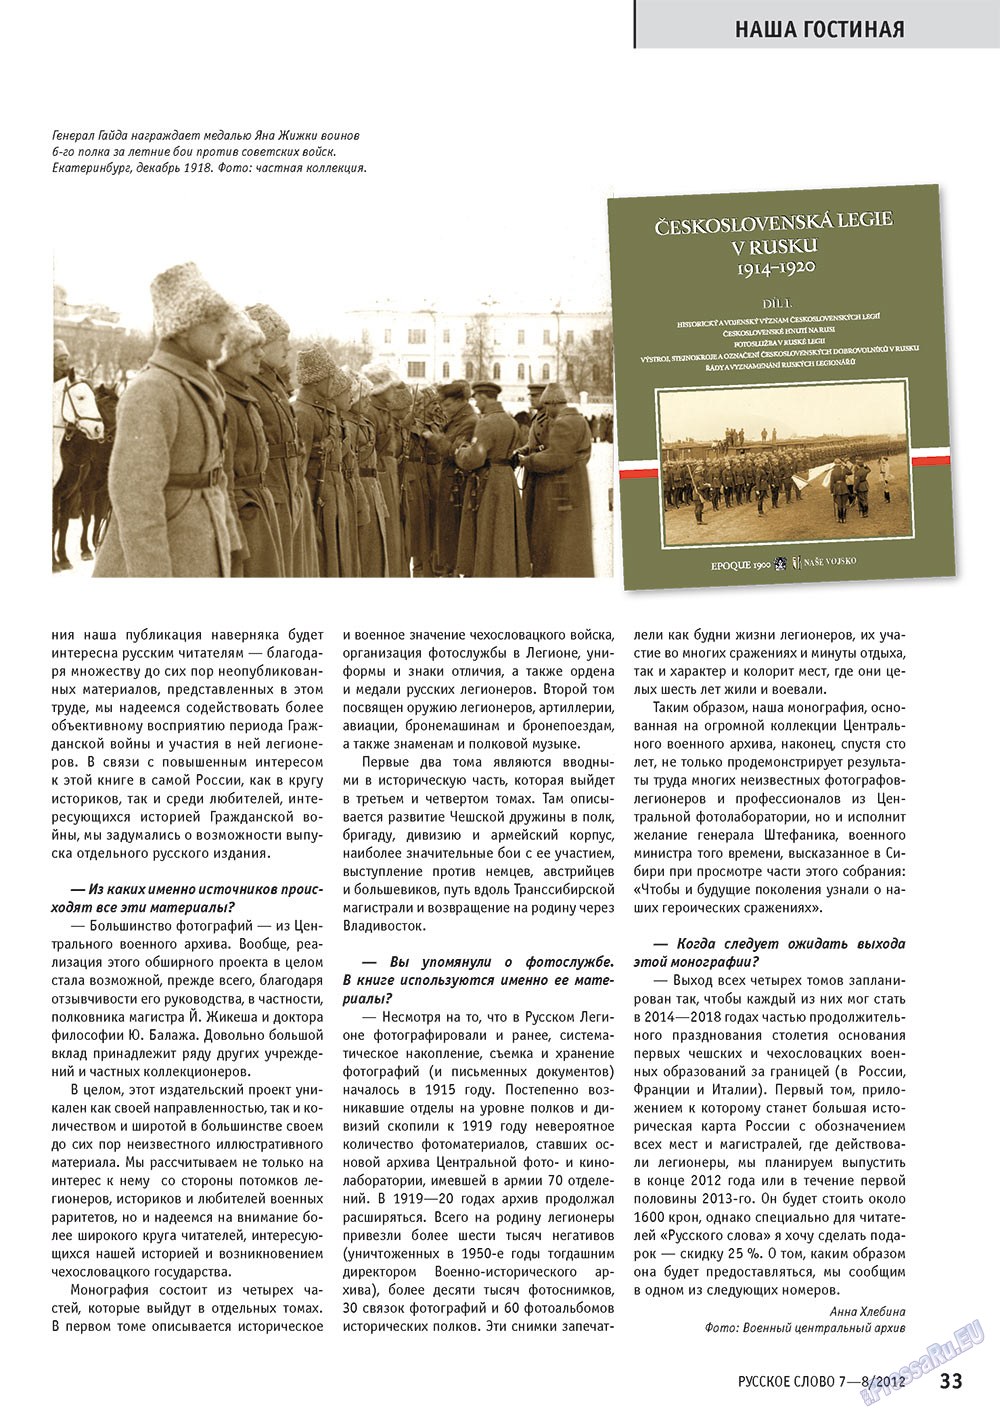 Русское слово (журнал). 2012 год, номер 7, стр. 33